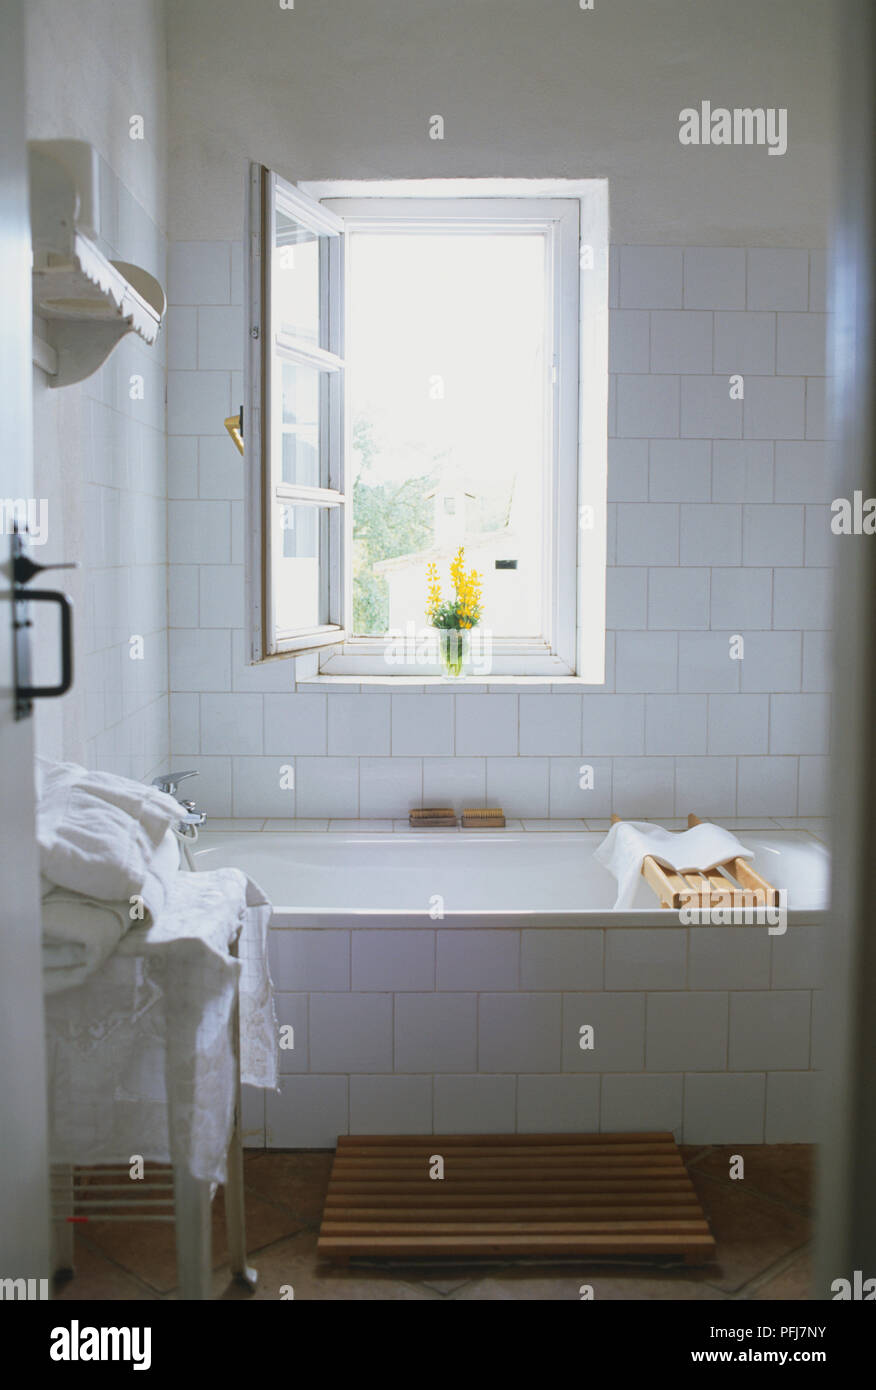 Salle de bains avec murs blancs et bassin rectangulaire, table avec les  serviettes blanches, carrelage en terre cuite avec un tapis de bain,  fenêtre ouverte, fleurs jaunes sur rebord de fenêtre Photo